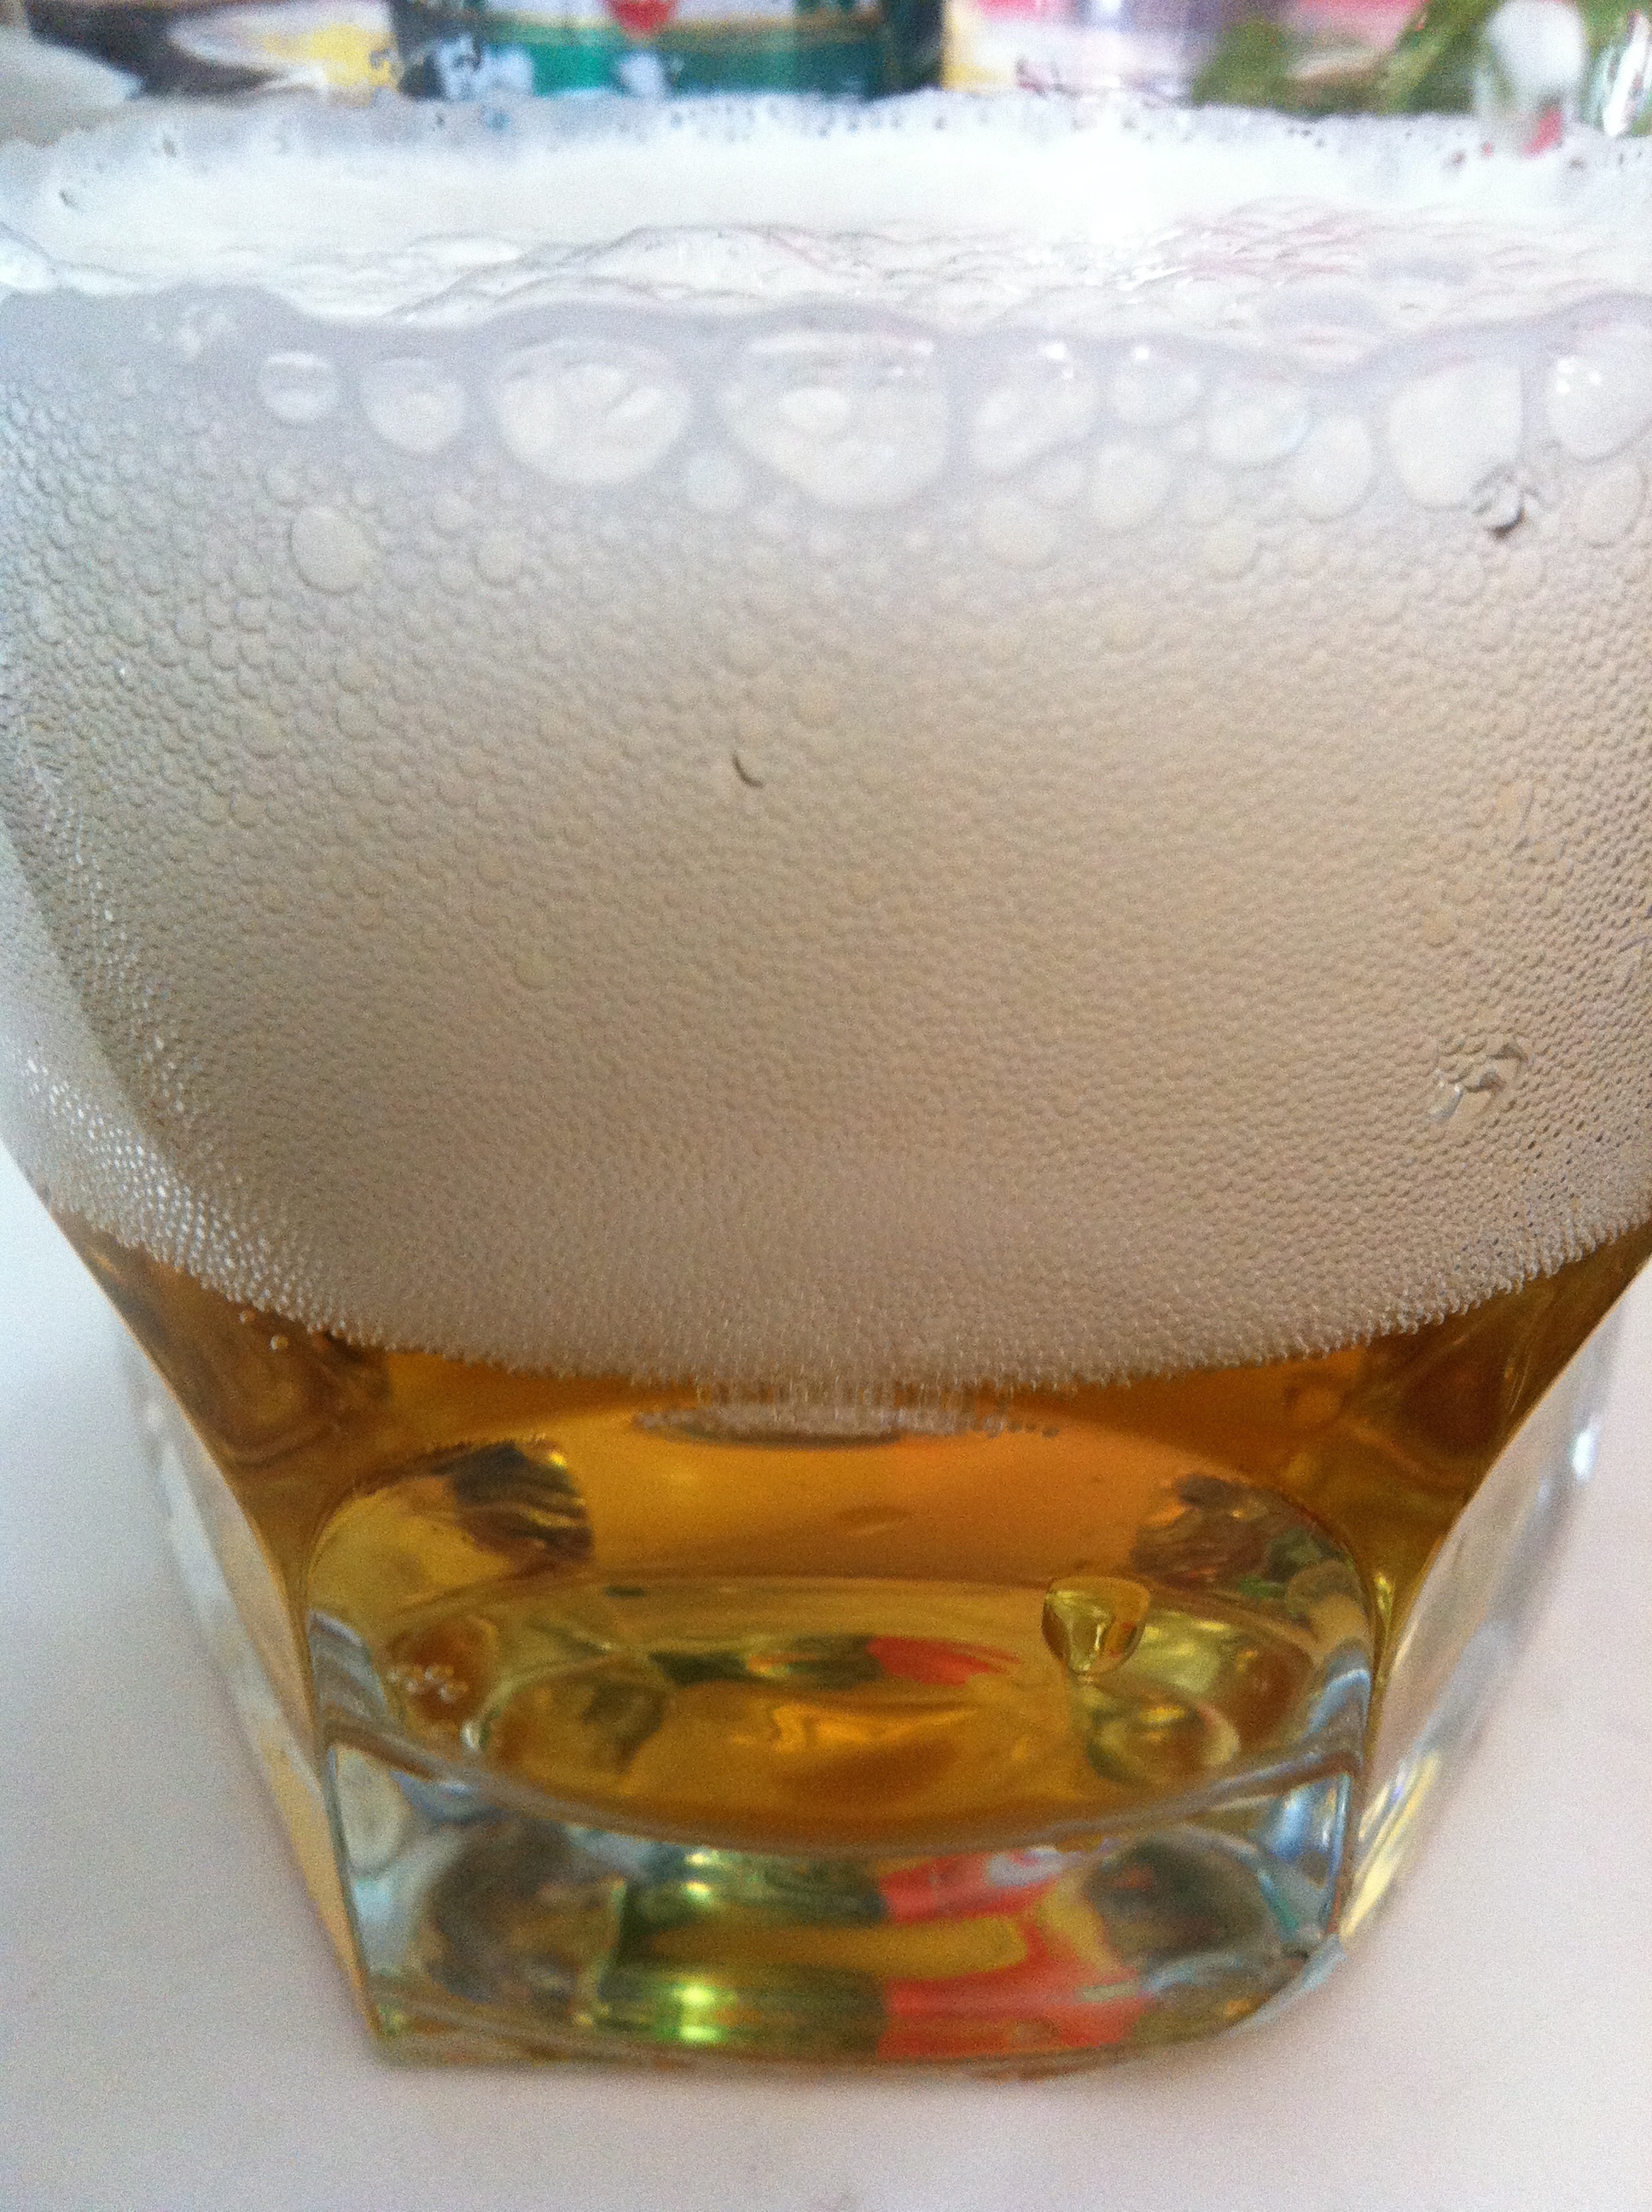 ¿Qué secretos esconde la física sobre la espuma de la cerveza?